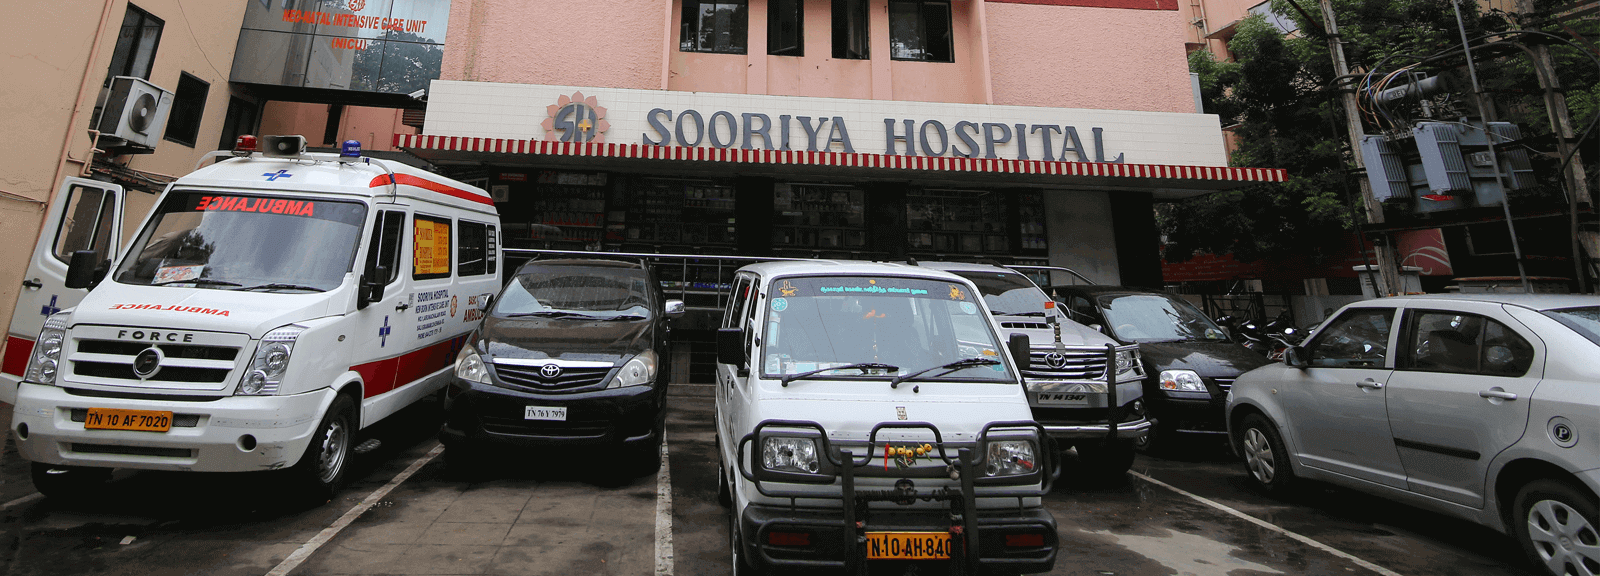 multispeciality hospital facilities chennai